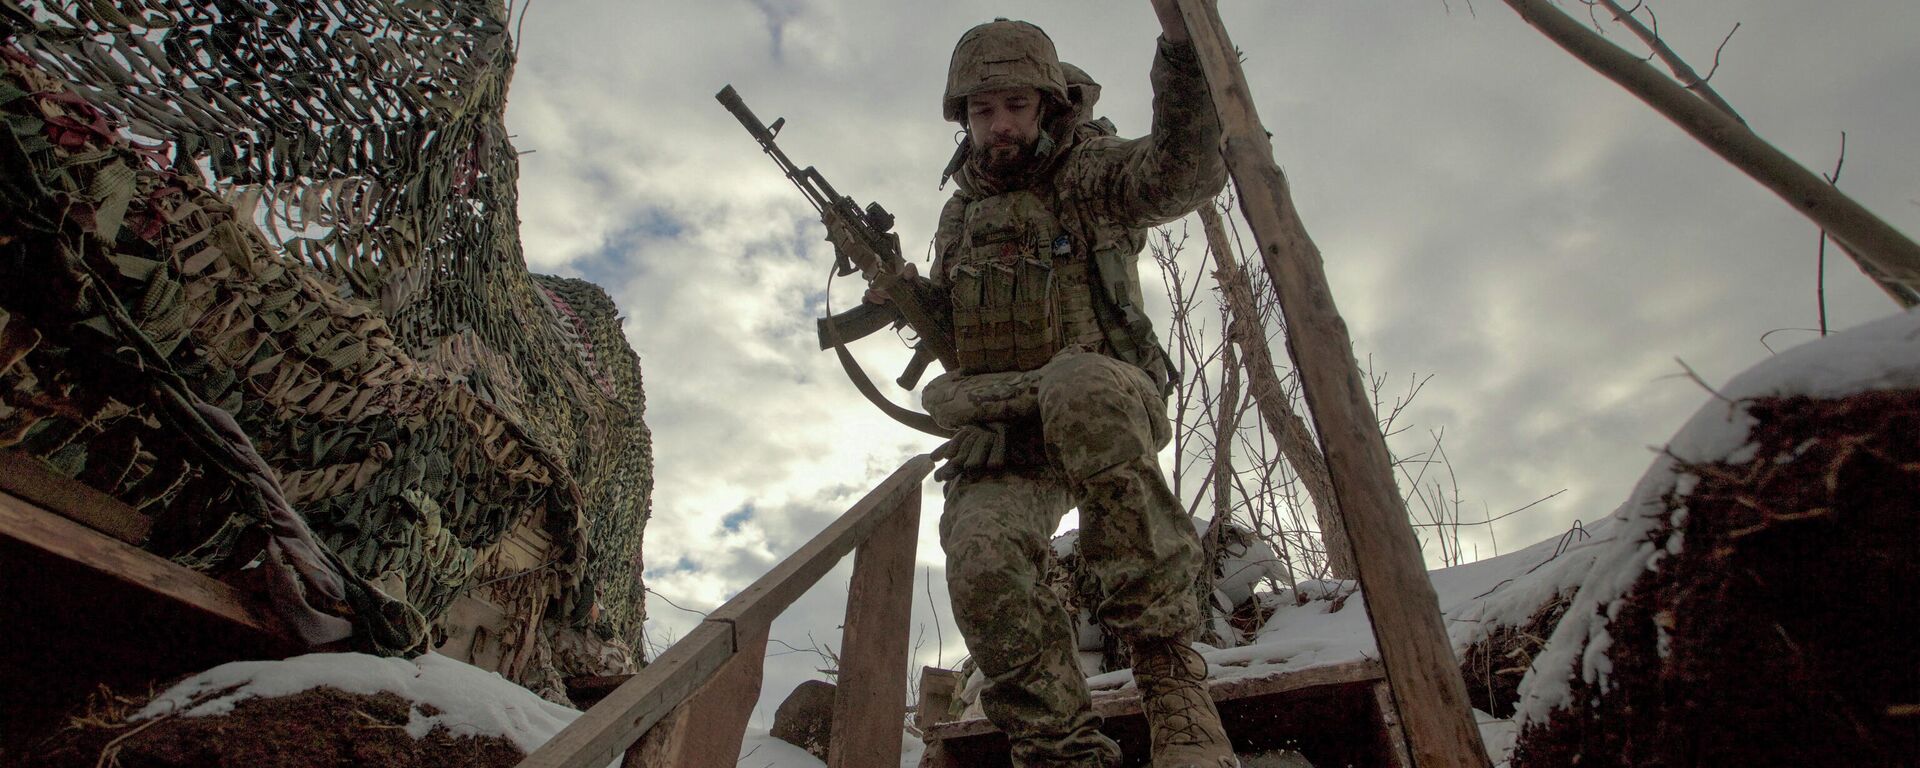 أحد عناصر القوات المسلحة الأوكرانية بالقرب من منطقة دونيتسك، أوكرانيا، 22 يناير 2022 - سبوتنيك عربي, 1920, 30.01.2022